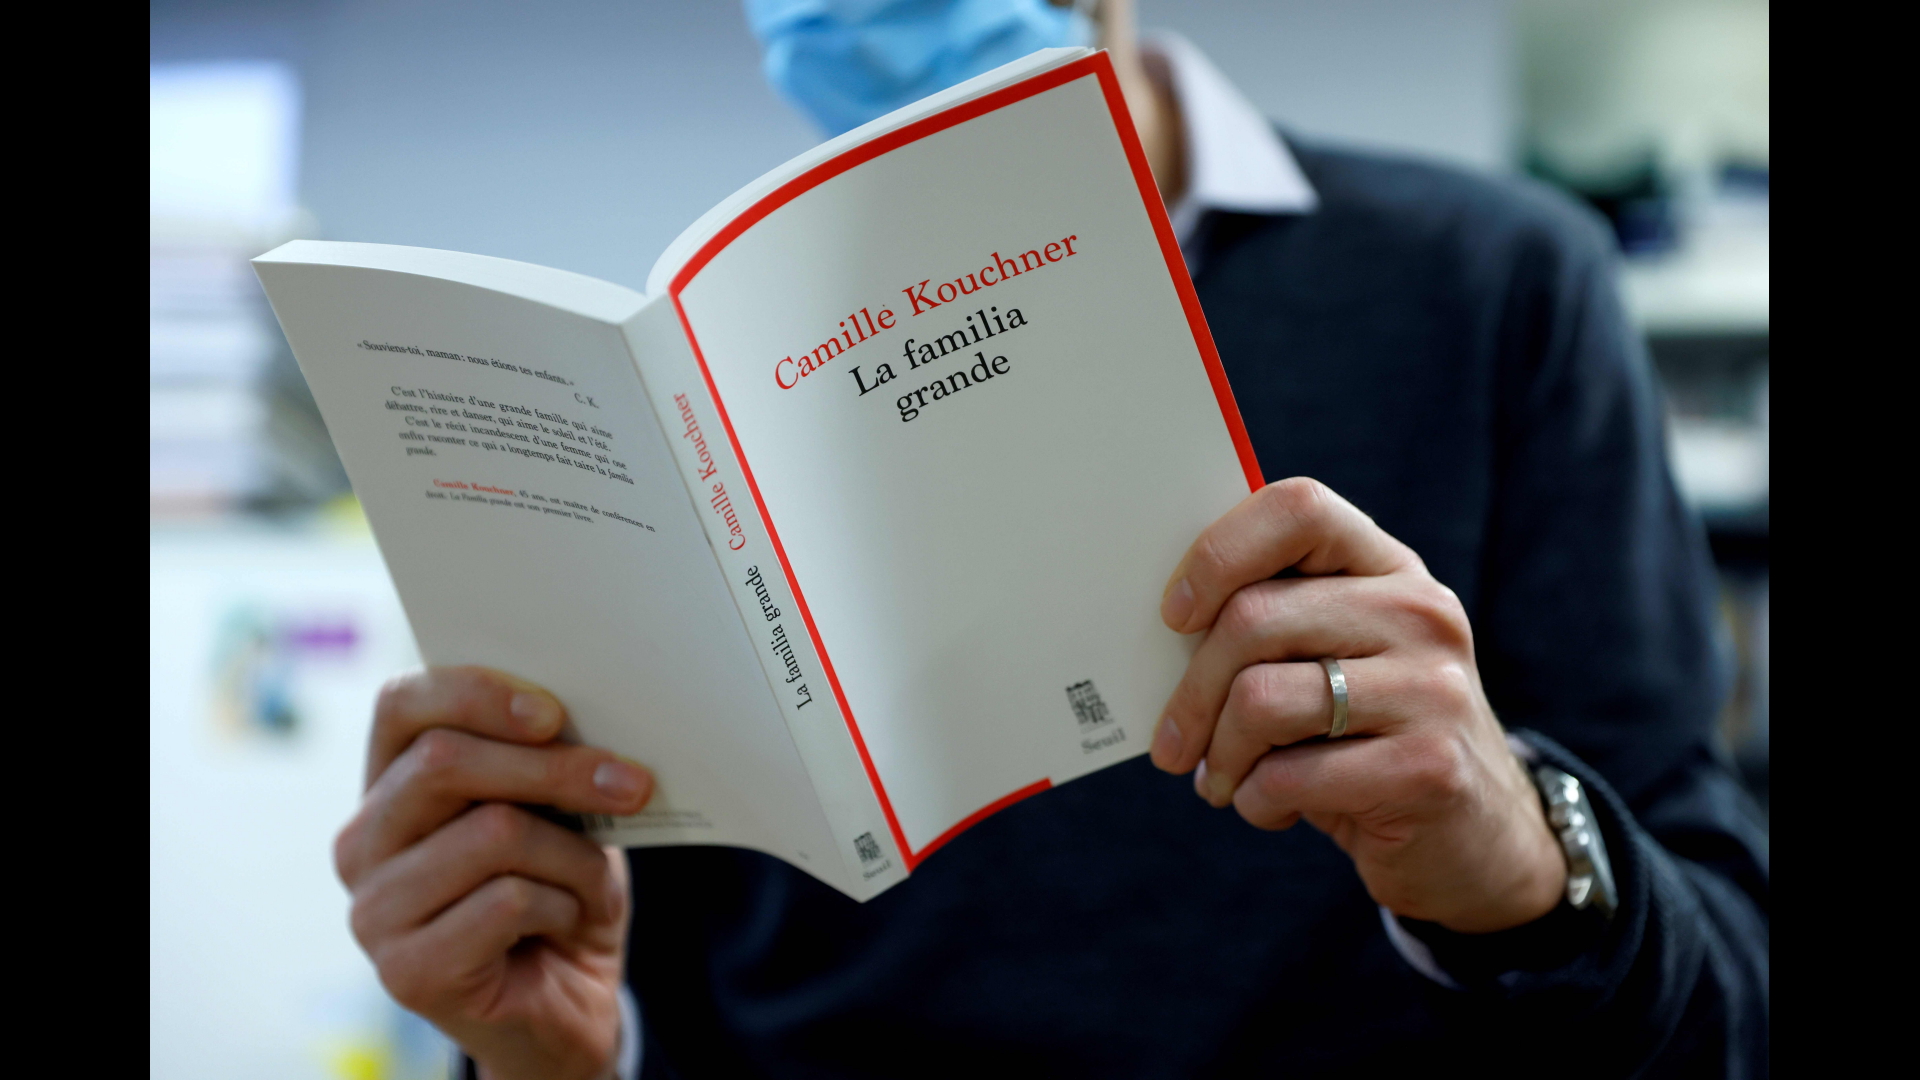 Journalist liest das Buch "La familia grande" von Camille Kouchner | dpa